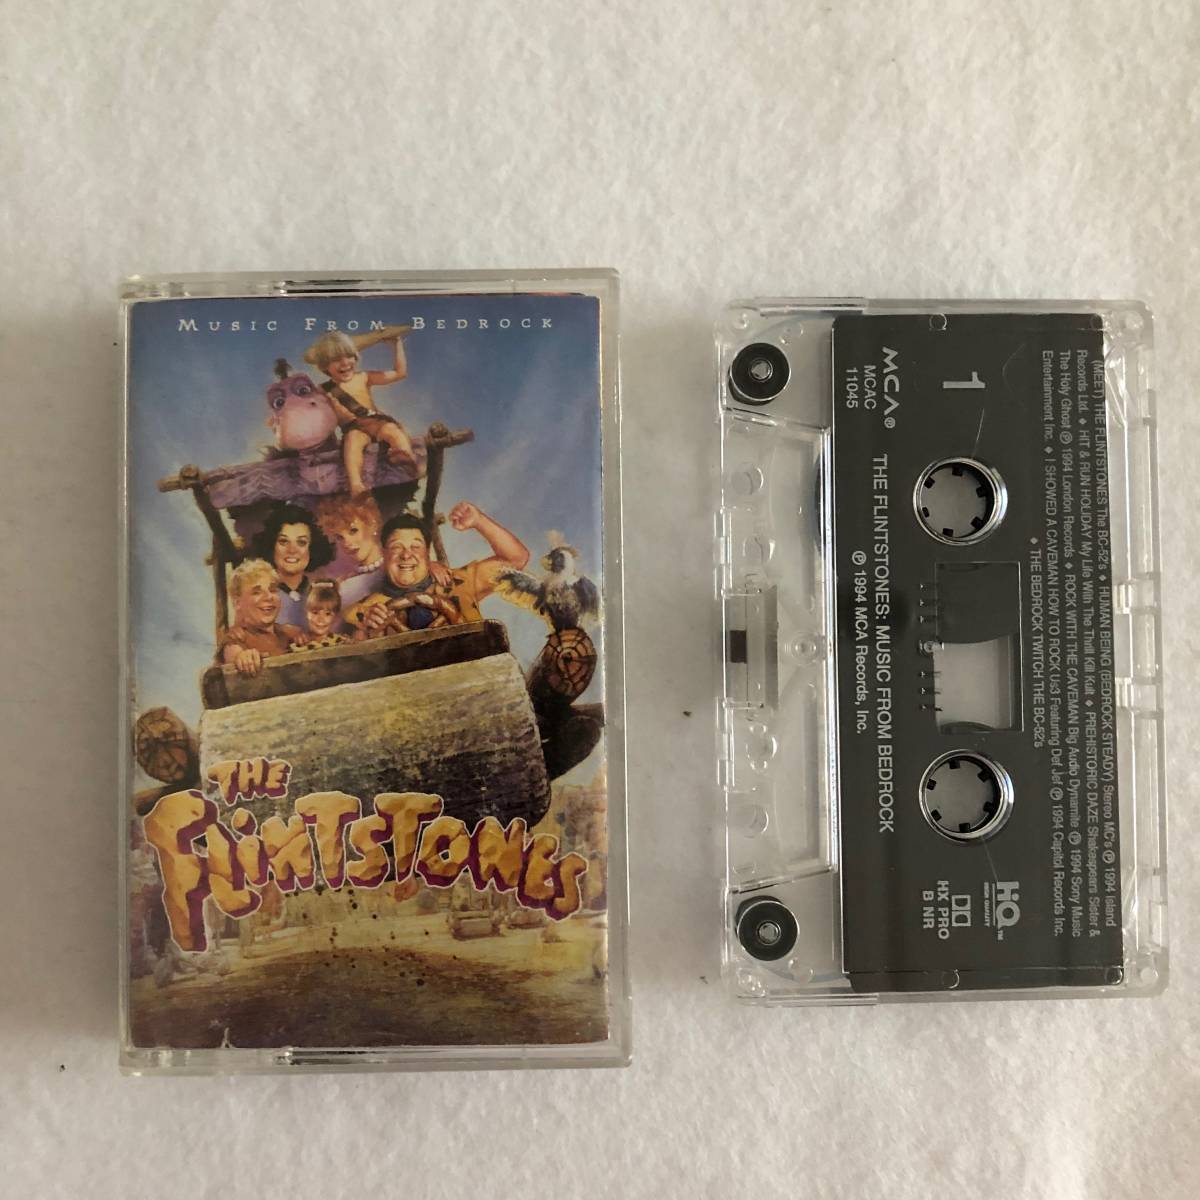 中古カセット The Flintstones フリントストーン/モダン石器時代 サントラ サウンドトラック MCA MCAC-11045 US盤 の画像1